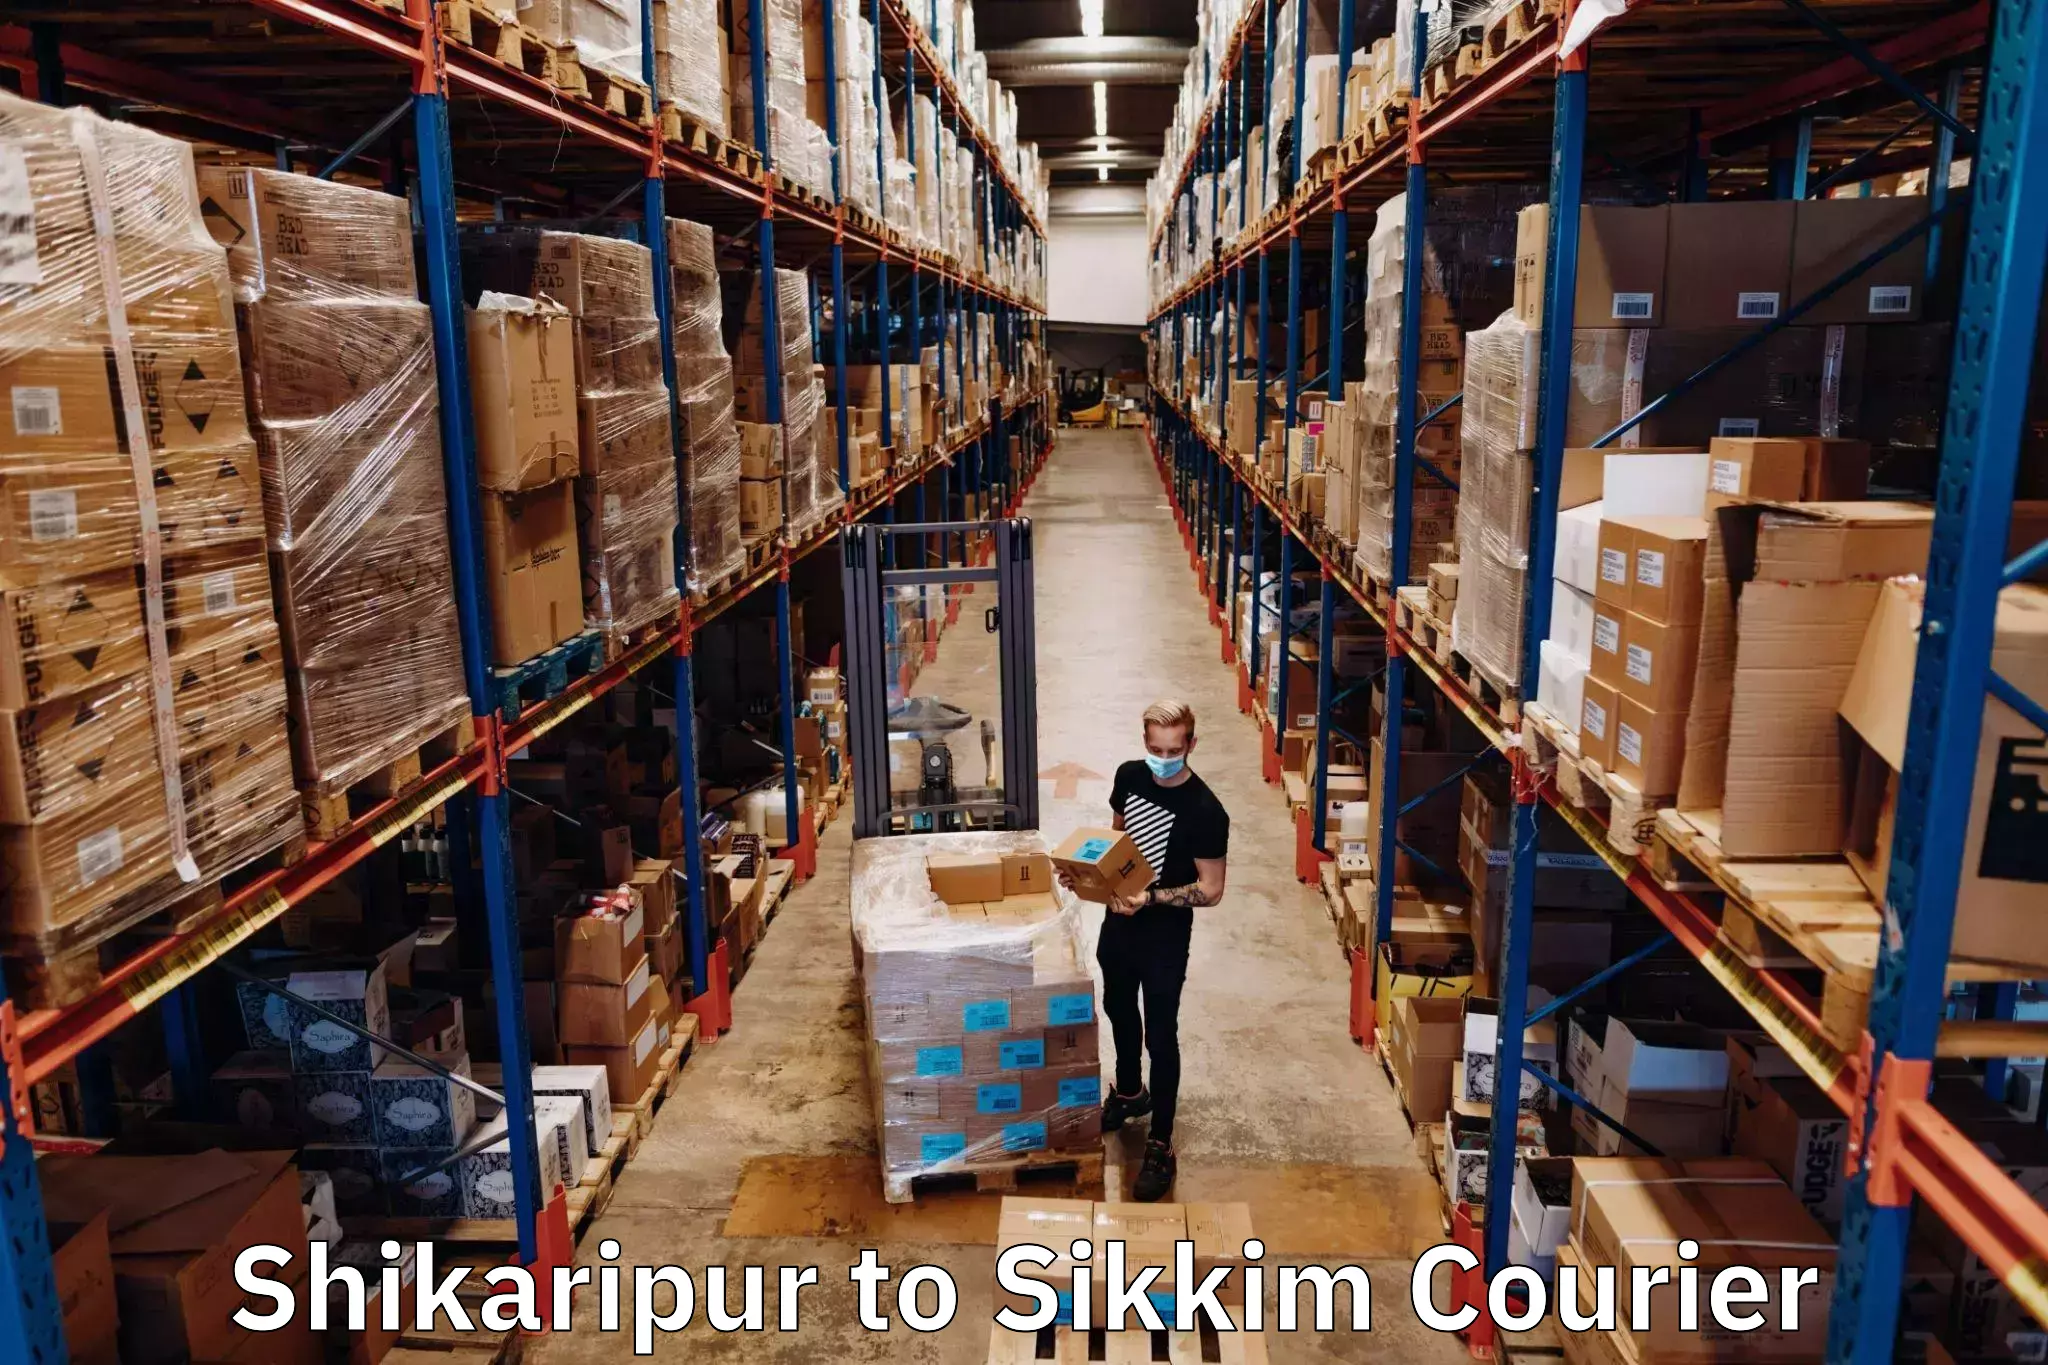 Courier service innovation Shikaripur to Ravangla